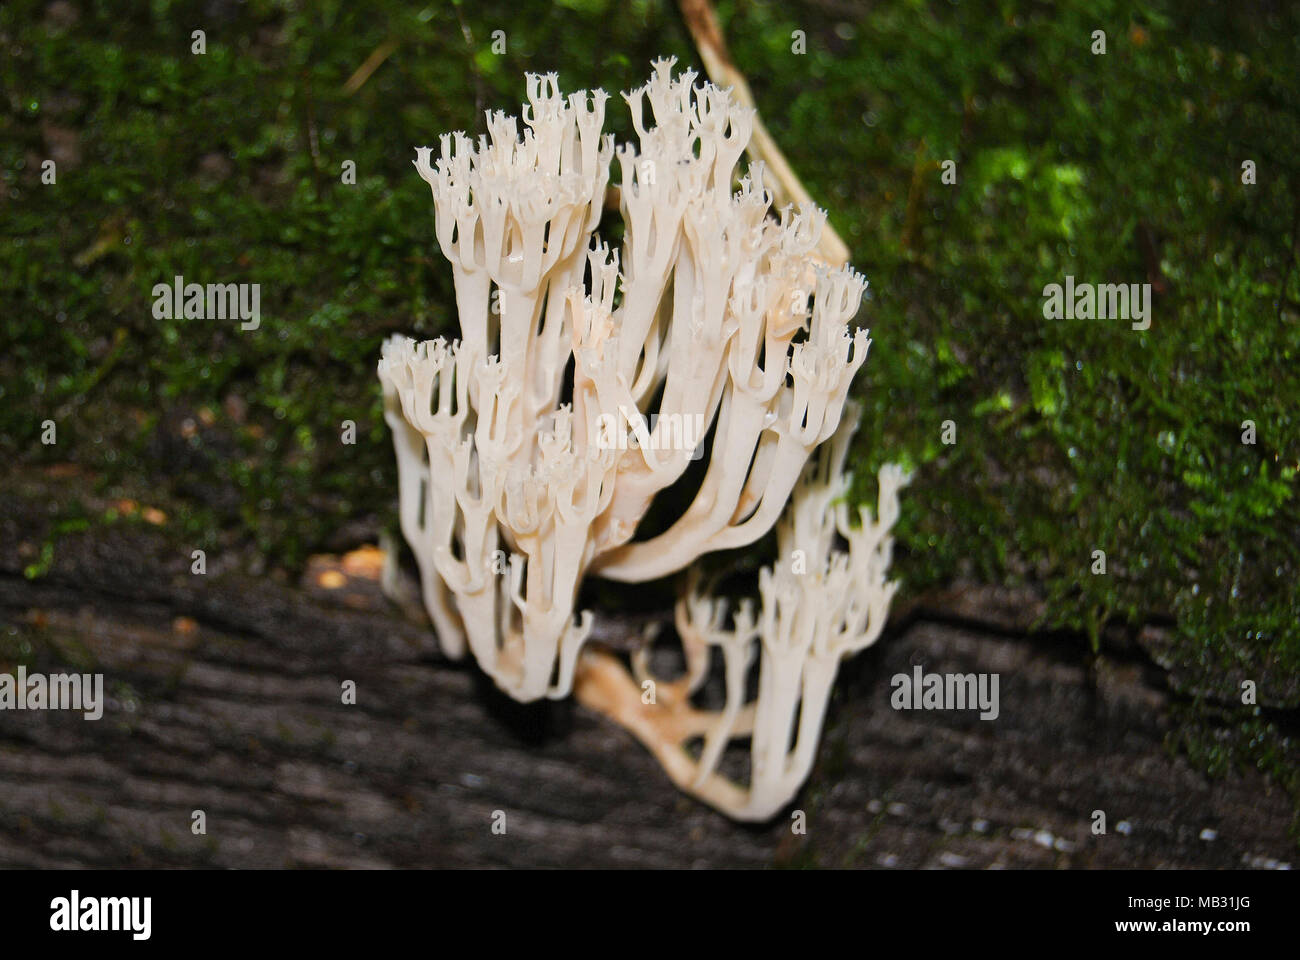 Eine weiße Koralle Pilz (Clavulina coralloides) wächst auf einem alten Baum im Wald. Stockfoto